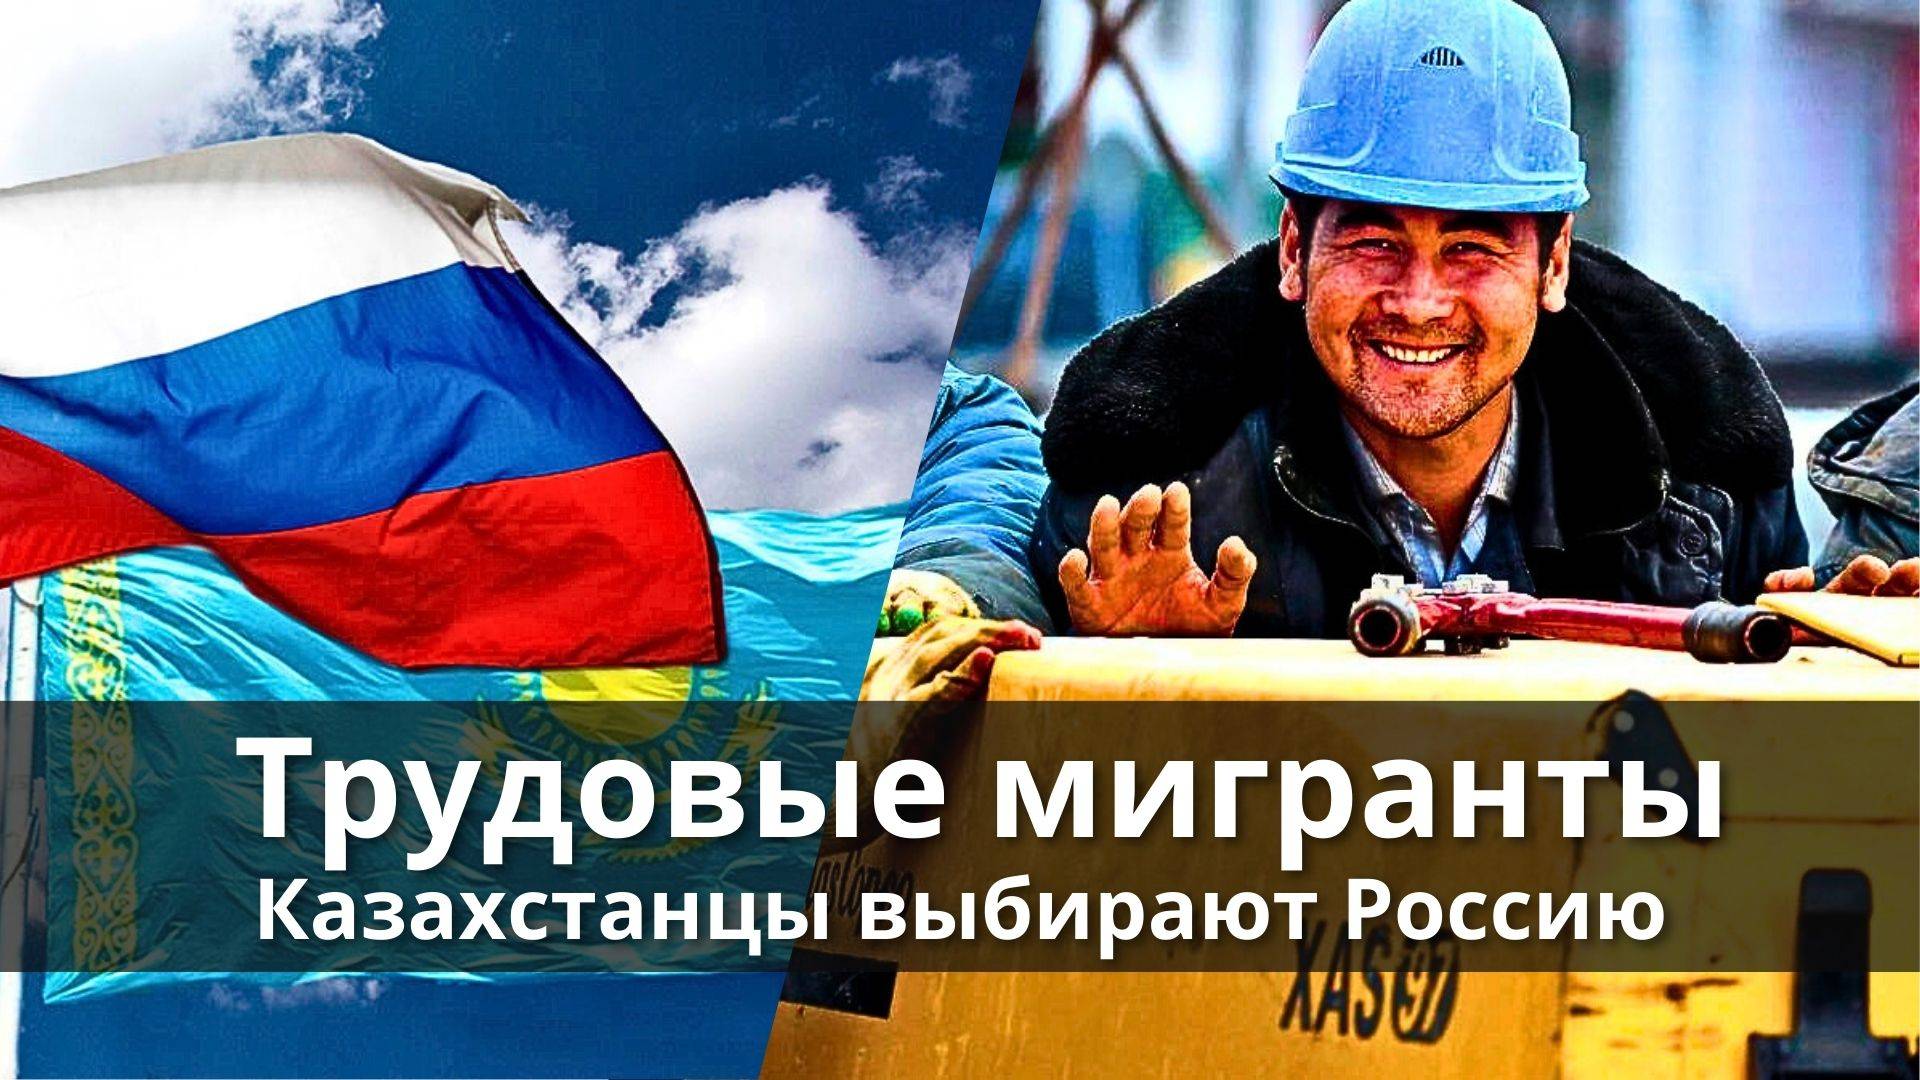 Казахстанцы выбирают Россию